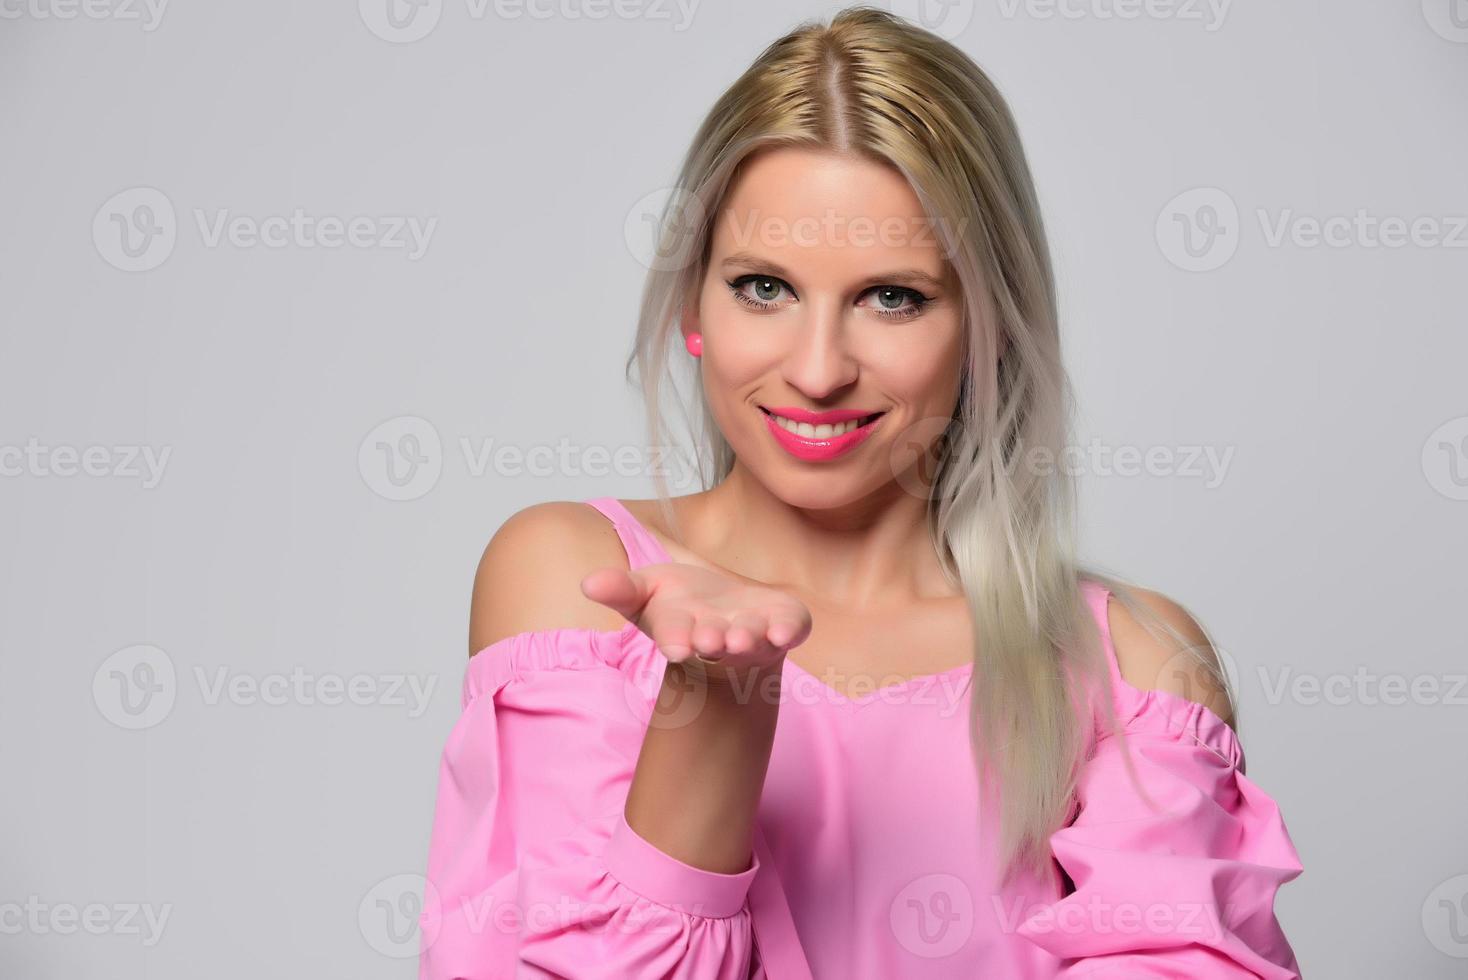 retrato de una hermosa joven con una linda camisa rosa y jeans azules posando en el estudio. concepto de belleza, emociones, expresión facial, estilo de vida, moda, cultura juvenil foto